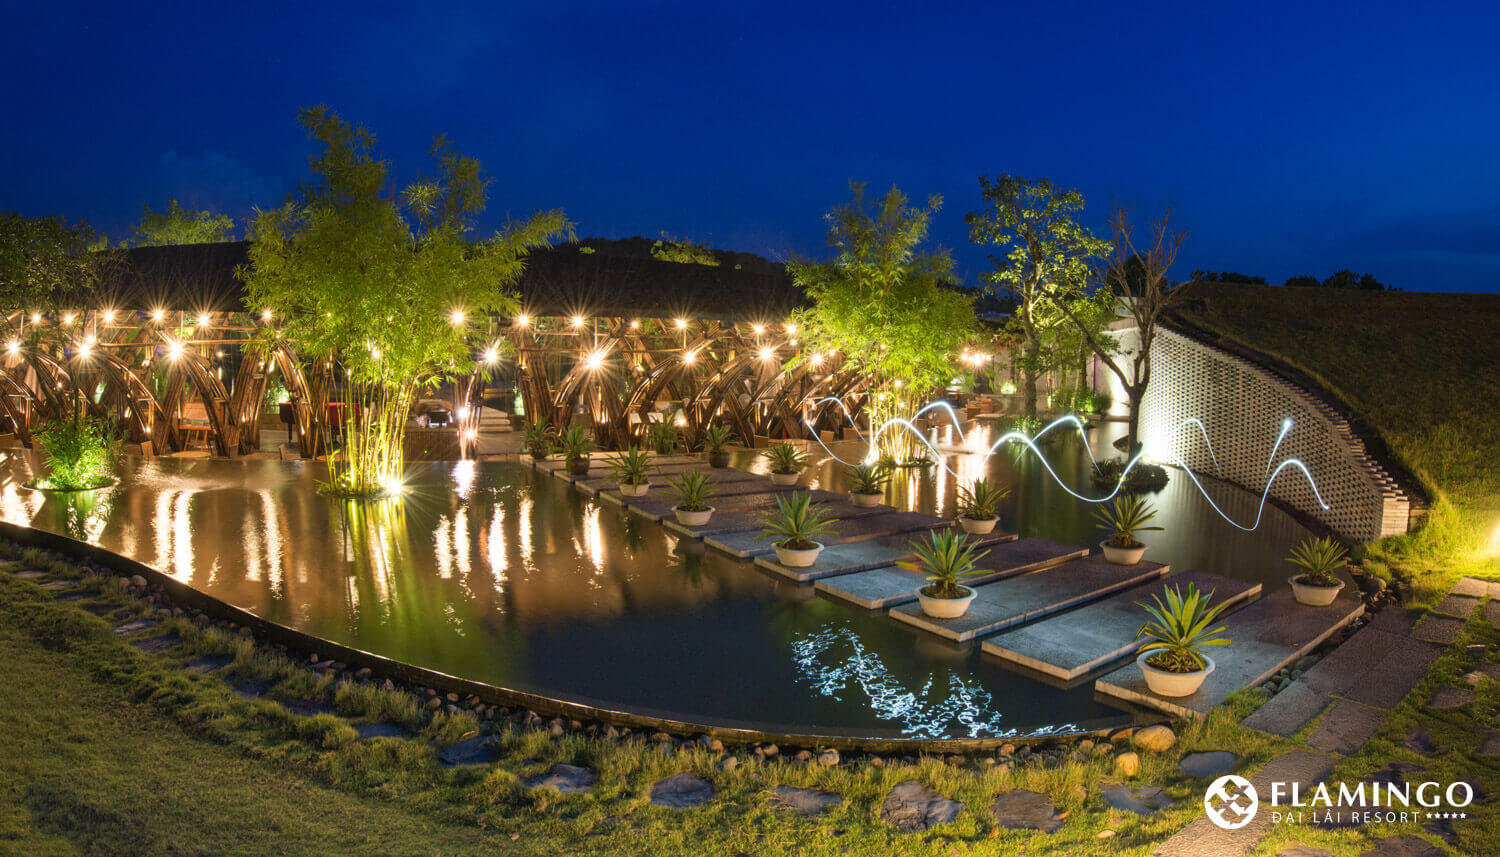 Voucher "Vui lễ 8/3" 2N1D: Phòng nghỉ tại Flamingo Đại Lải Resort + 01 bữa ăn và 01 giờ xông hơi Hàn Quốc